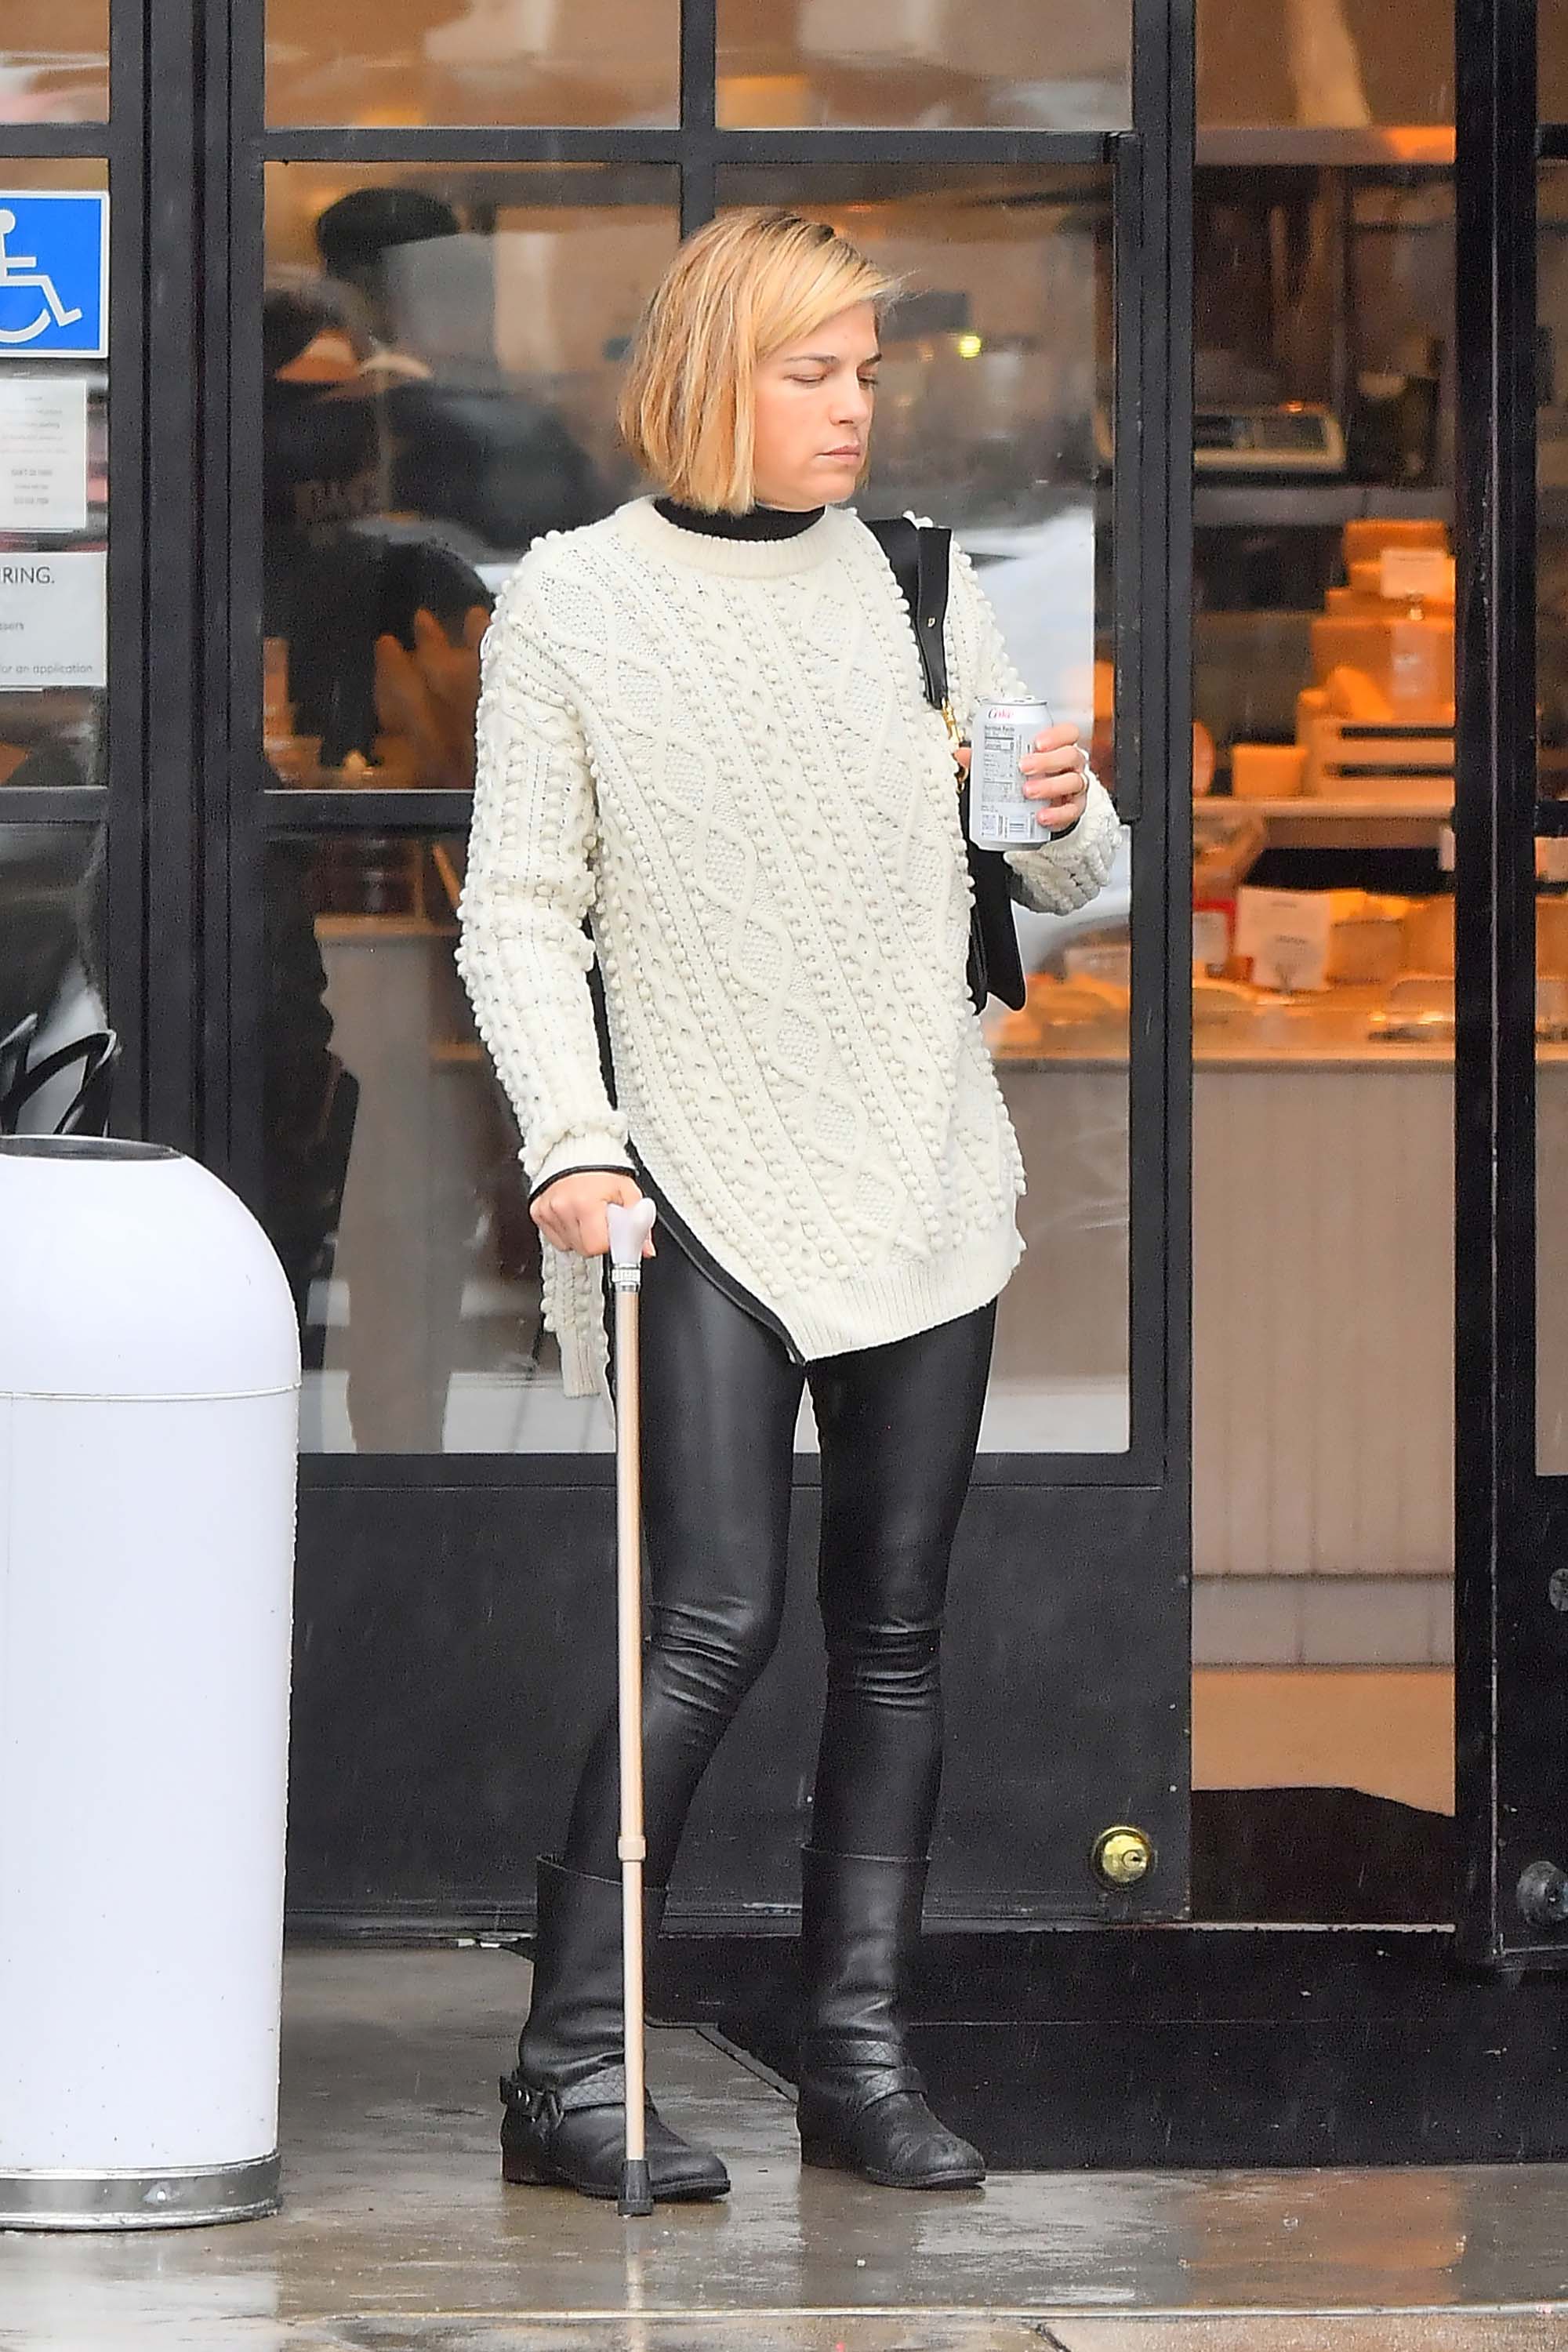 Selma Blair uses a cane leaving a restaurant